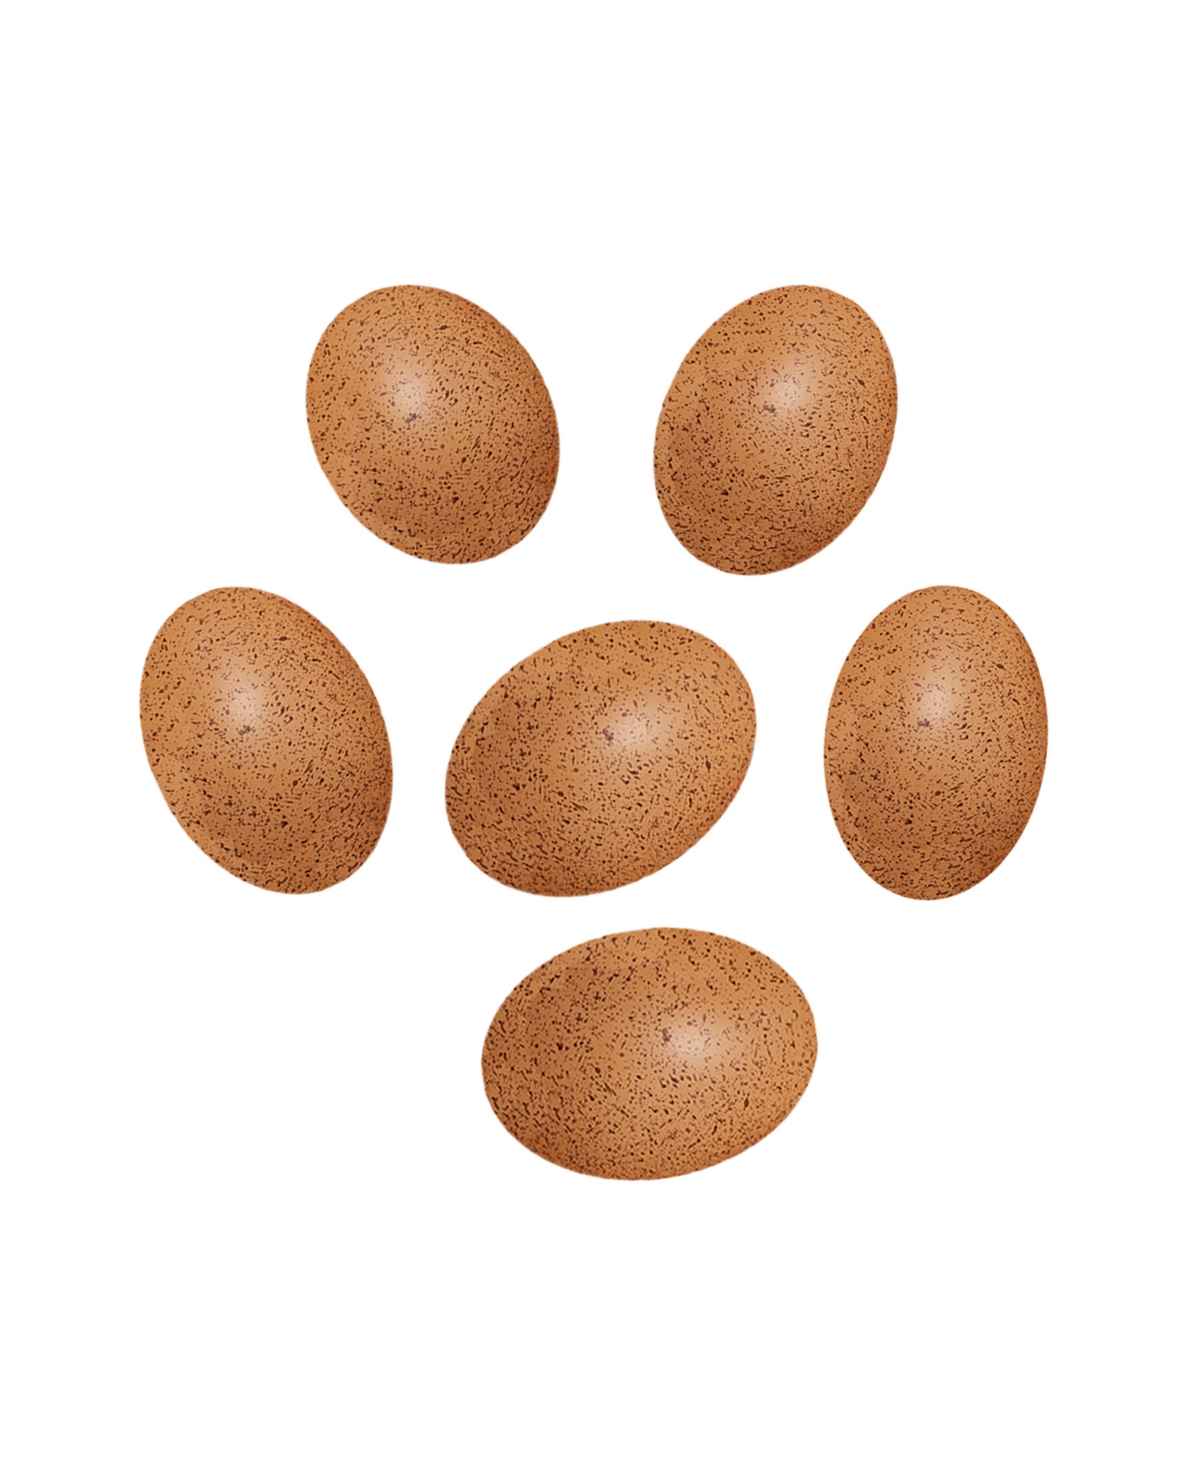 Yellow Door Sensory Sound Eggs, Set Of 6 In Brown